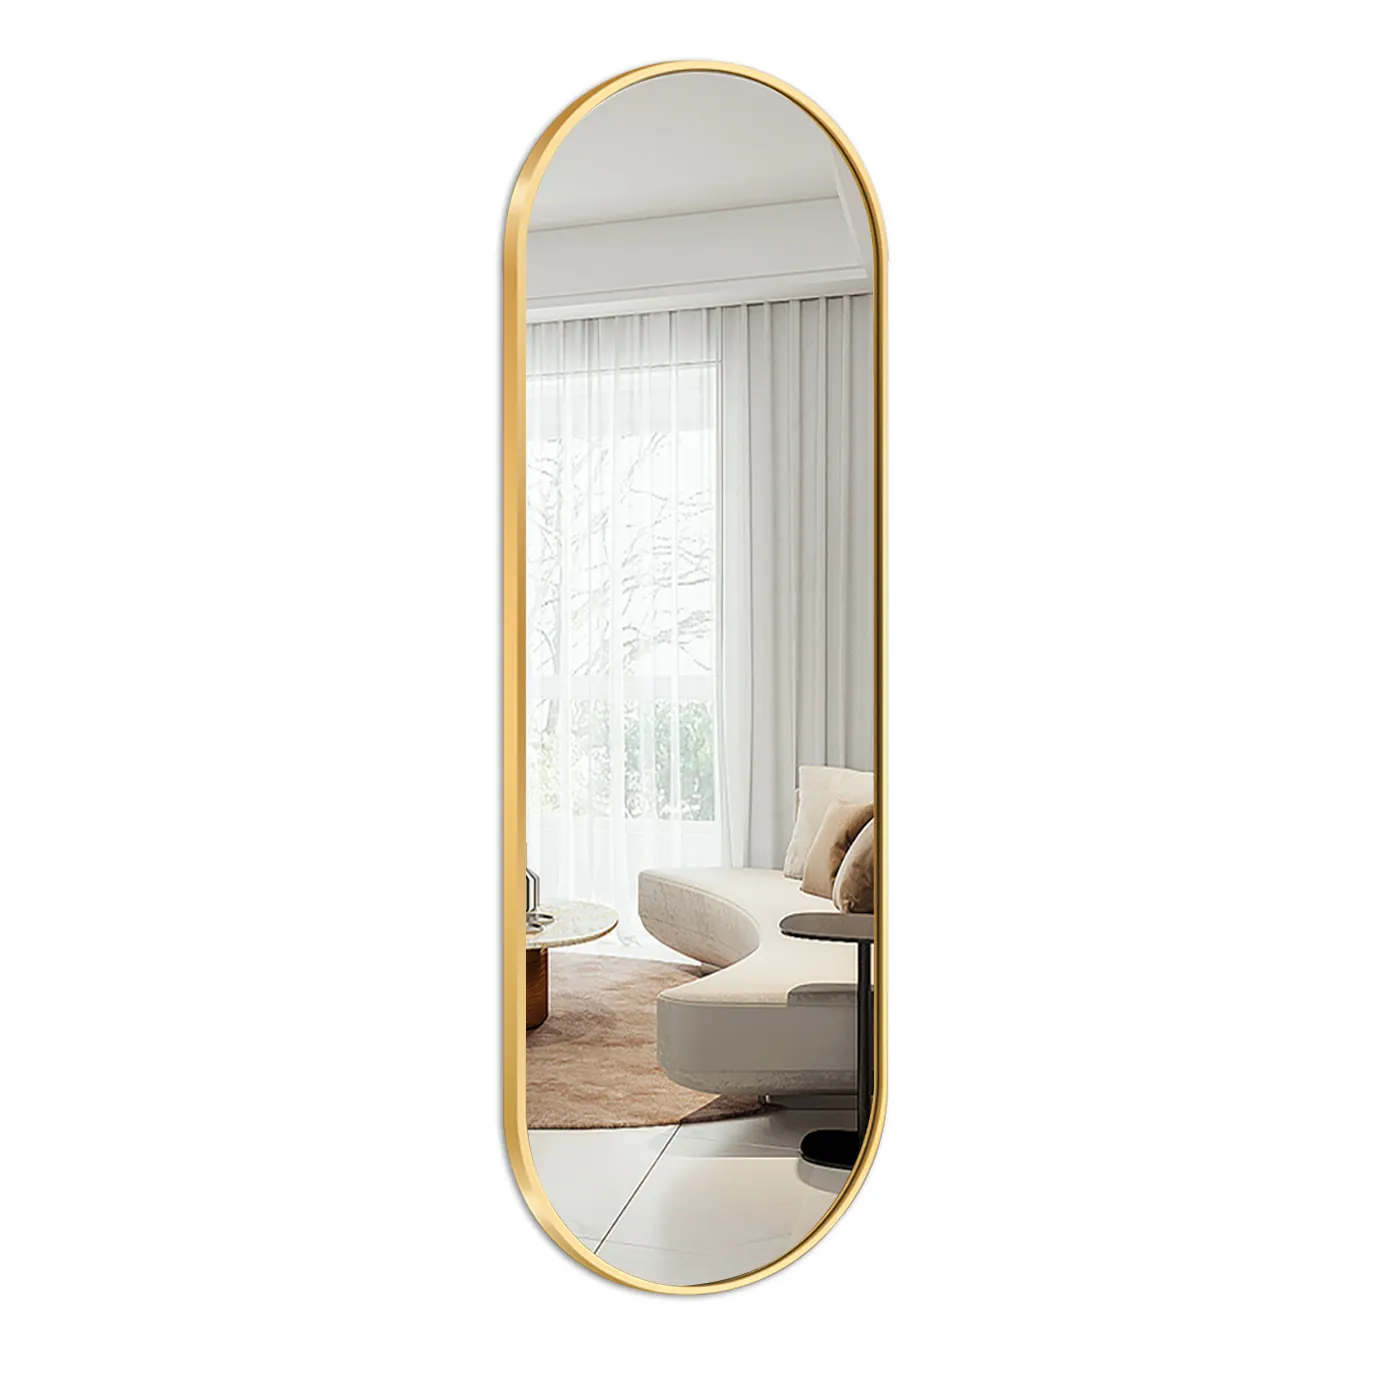 楕円形のバスルームミラー壁掛けブラッシュドメタルフレームは、リビングルームに垂直かつ水平に完璧なモダンな装飾を掛けます